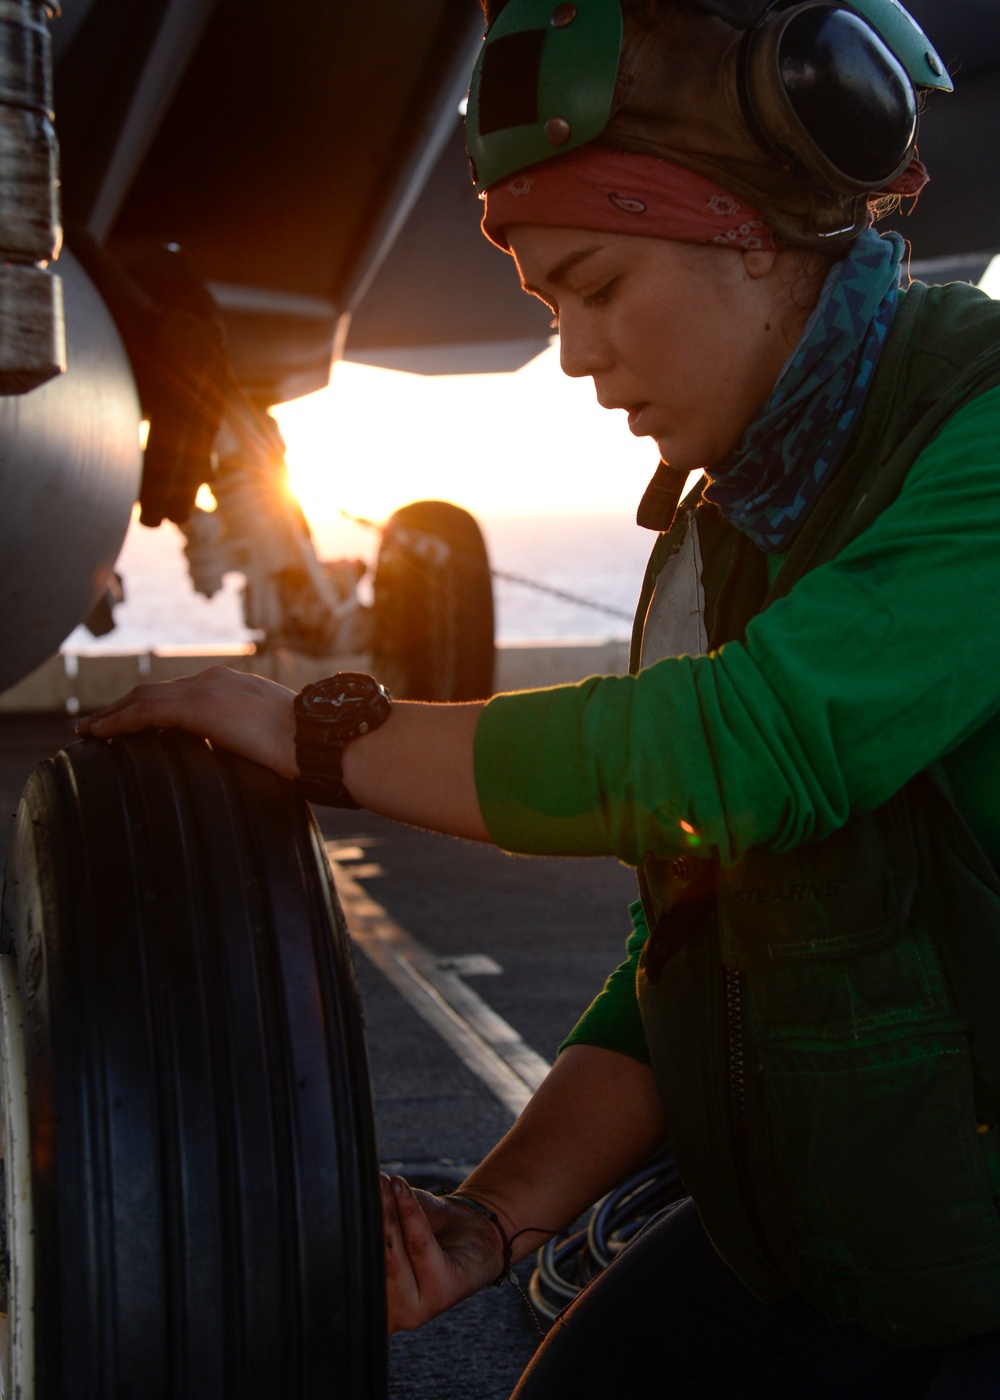 Sailor replaces aircraft tire